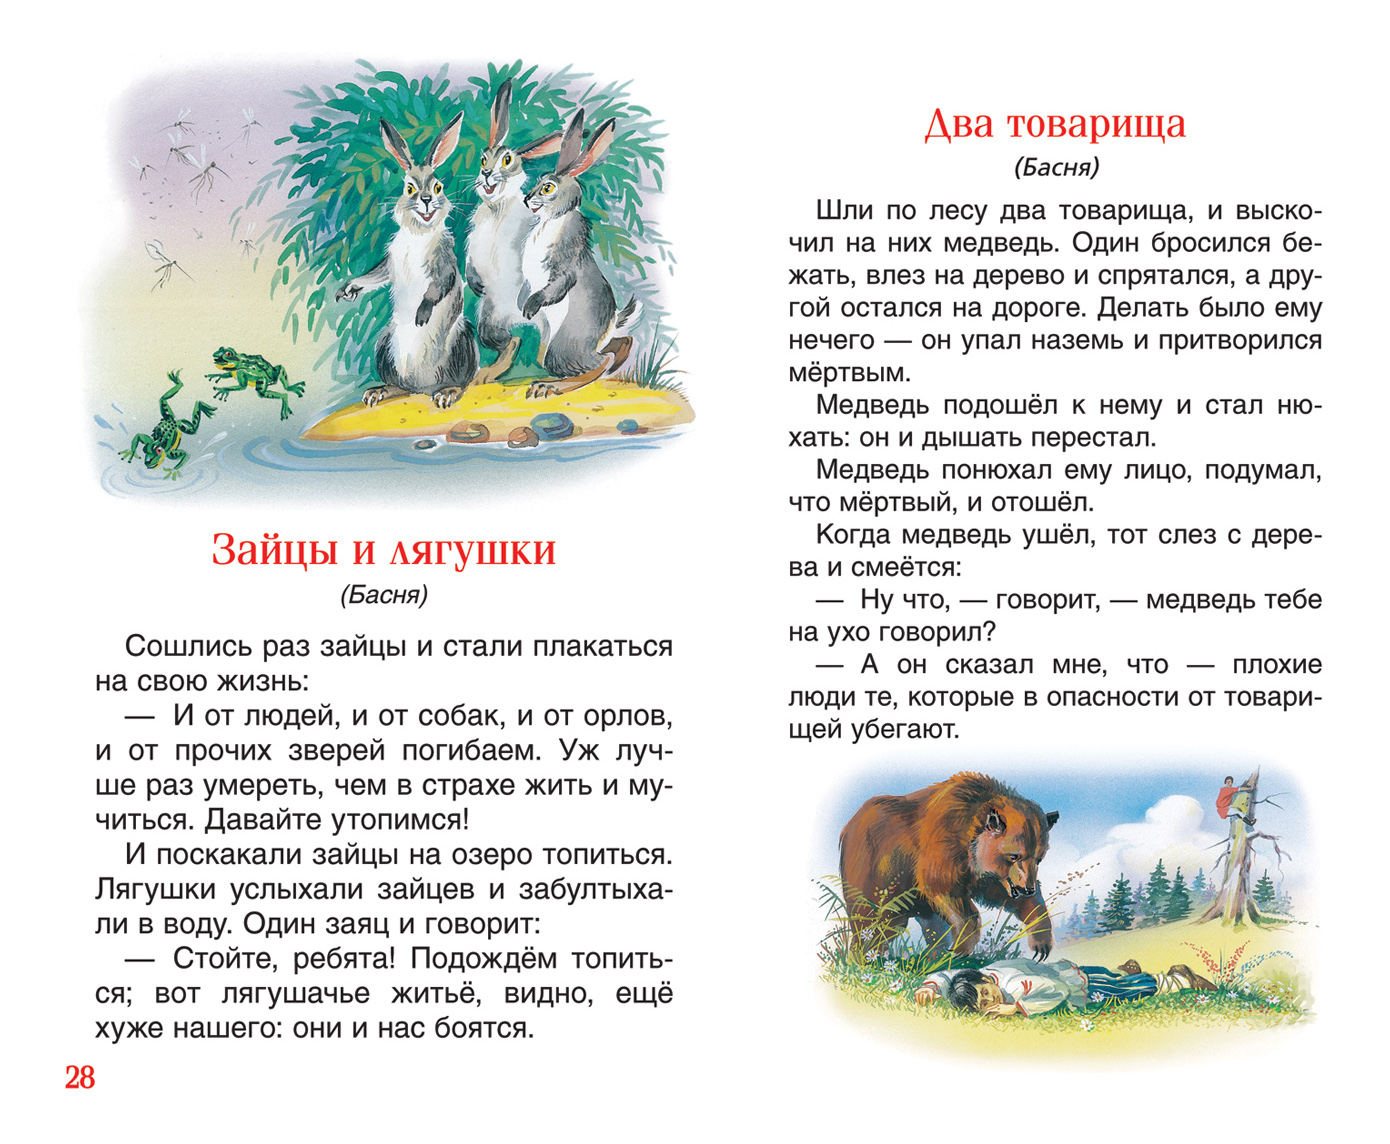 Рассказы о животных толстого льва николаевича, 3 класс